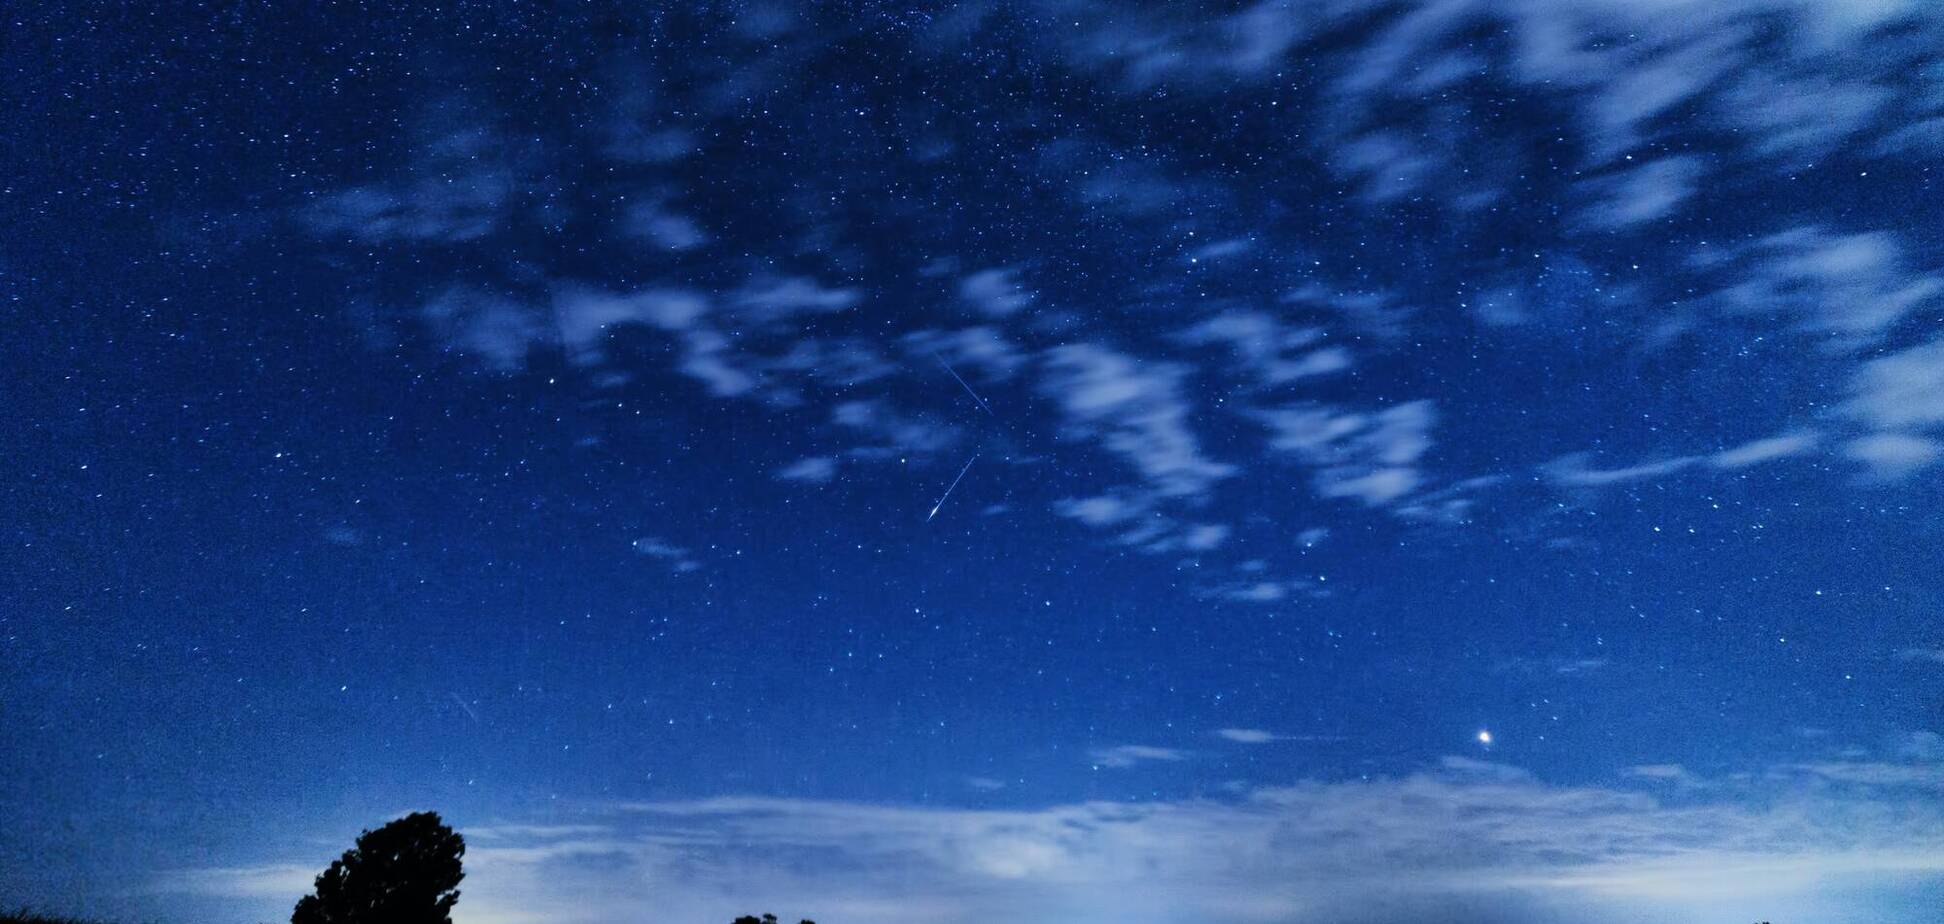 Звездопад Персеиды можно наблюдать каждый год в августе со стороны созвездия Персея